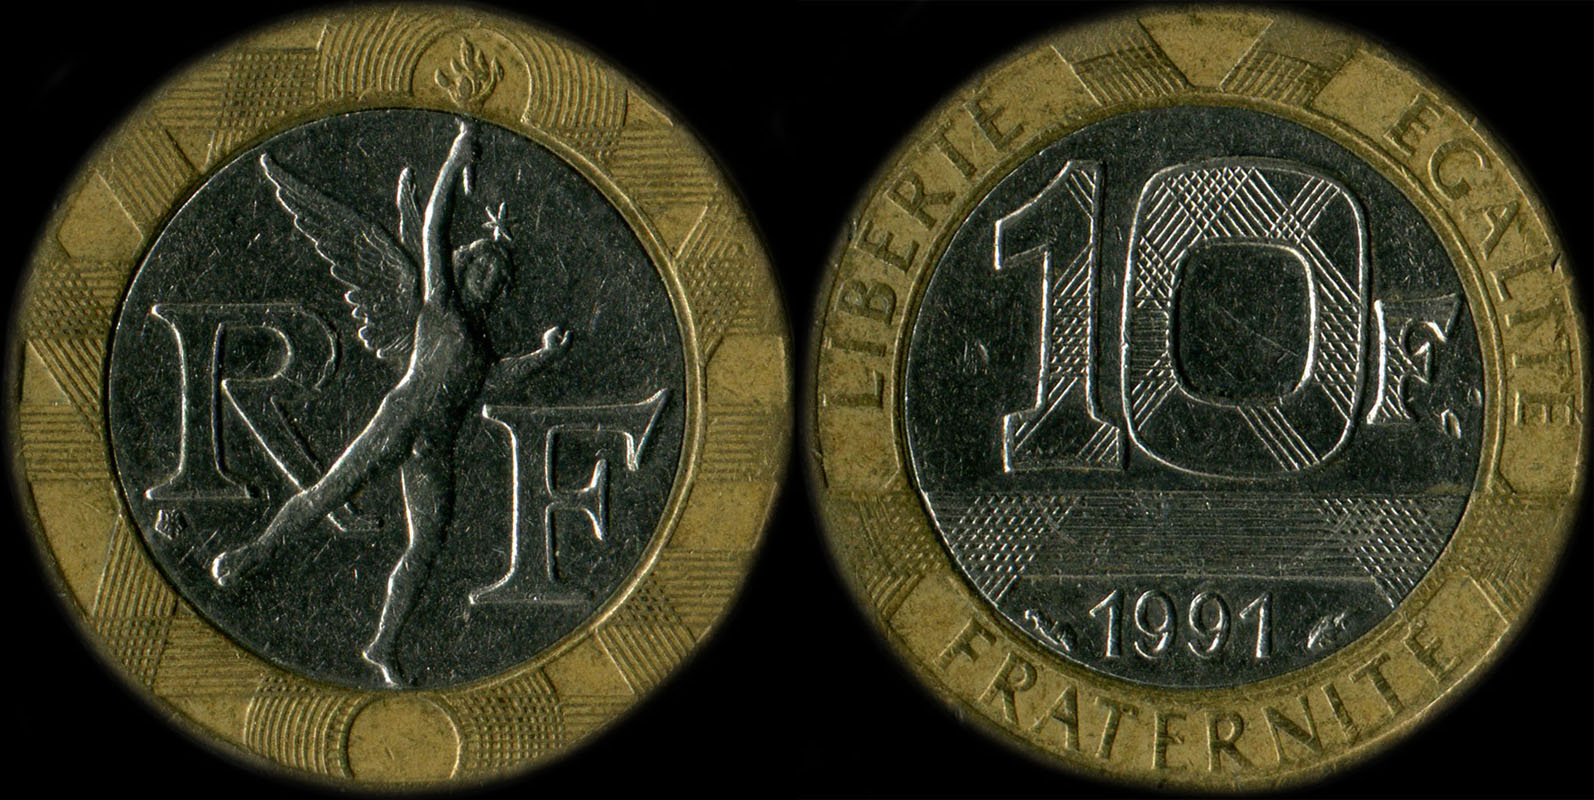 Pice de 10 francs Gnie 1991 diffrent de Pessac ne touche pas le cercle